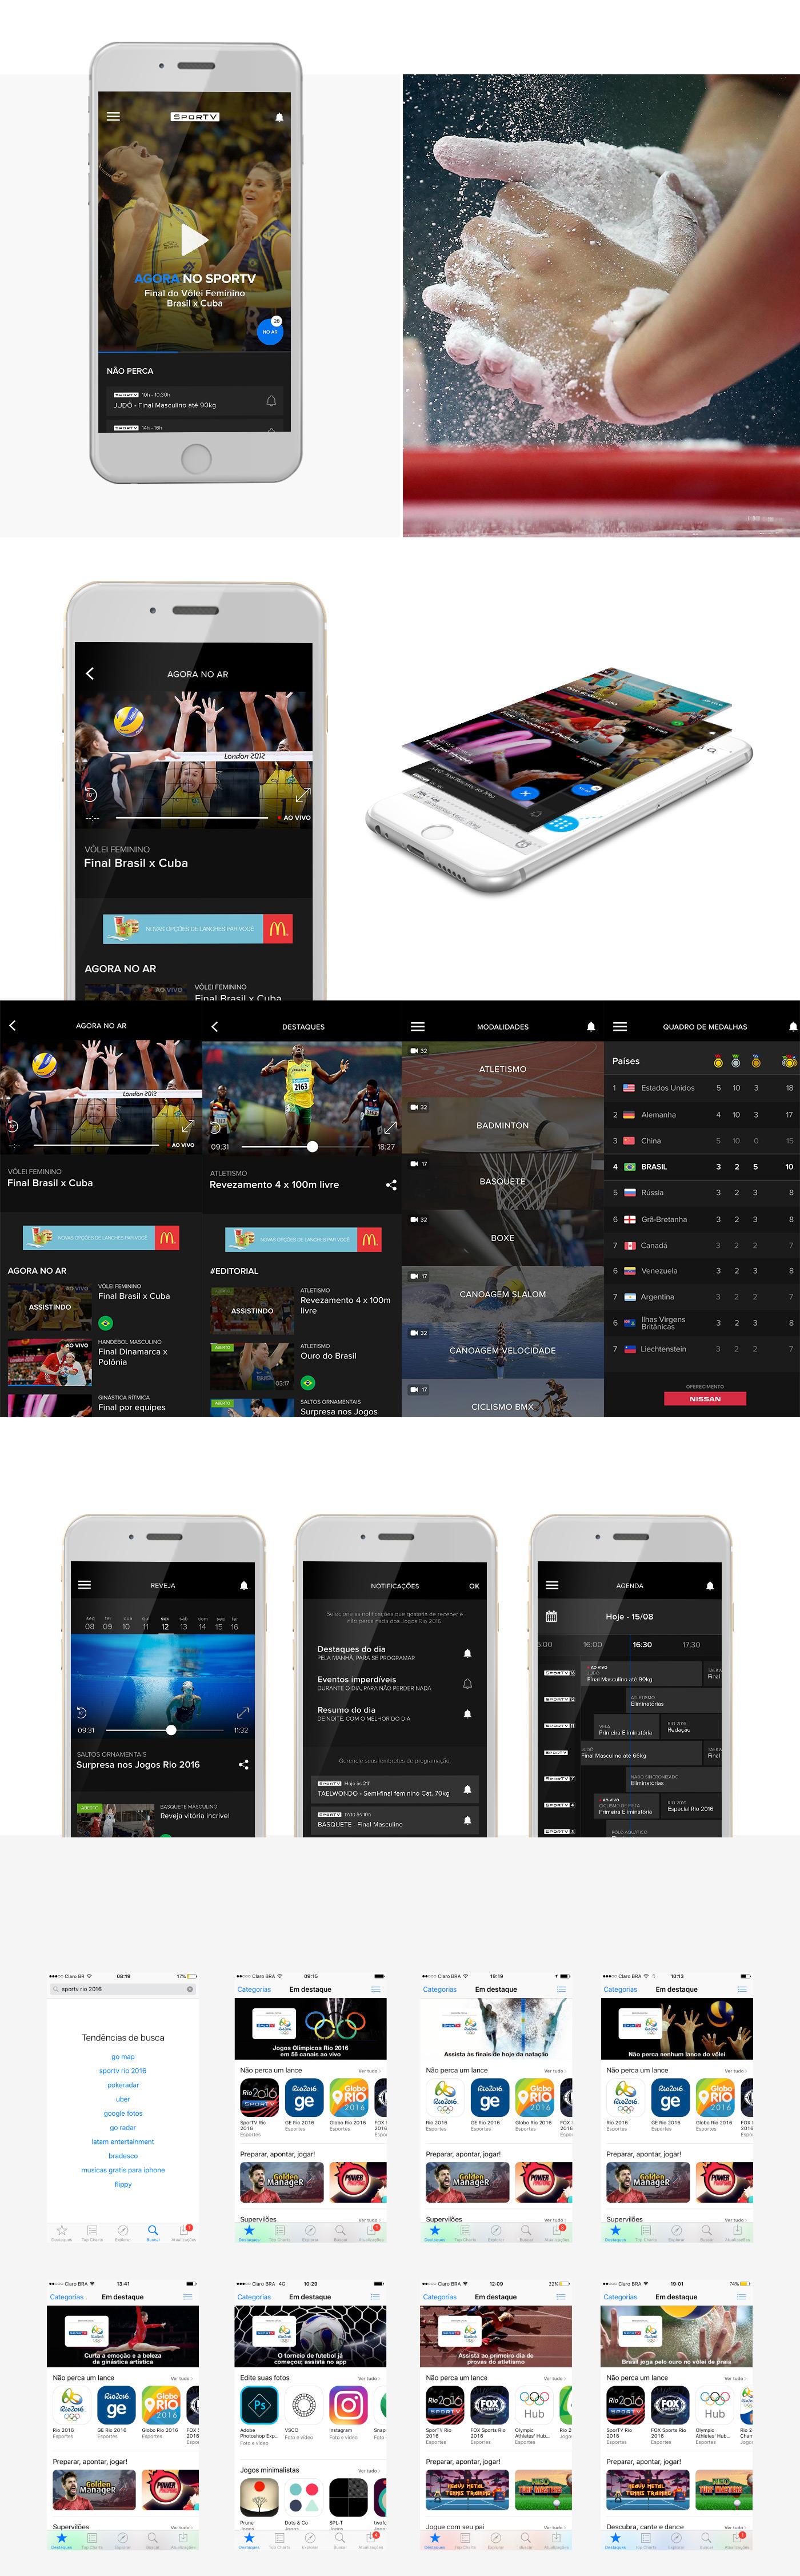 Olympic Games rio 2016 Olympic Games Rio design app design app ui UI ux